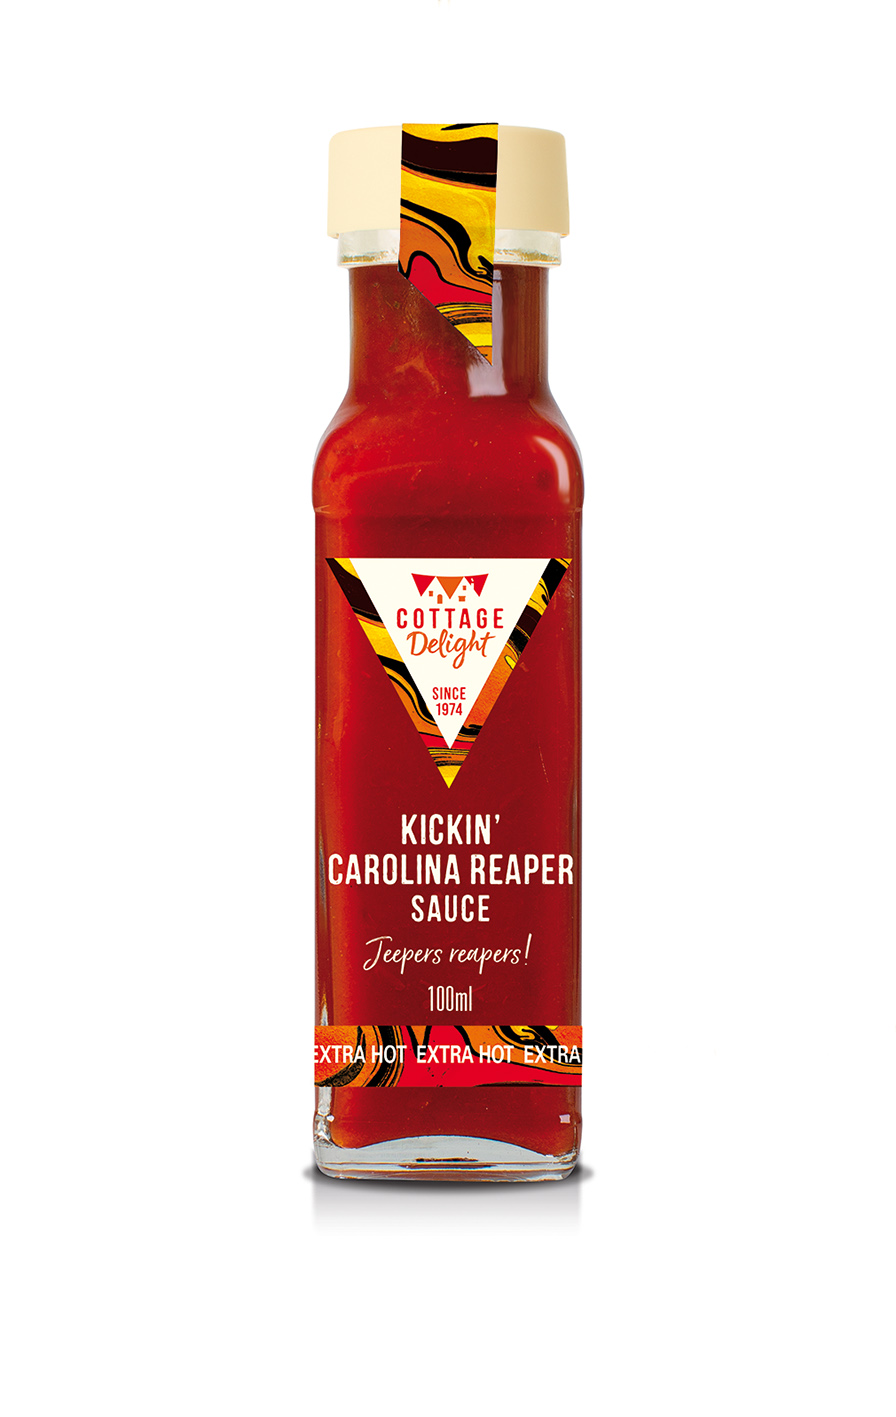 Kickin' Carolina Reaper Sauce